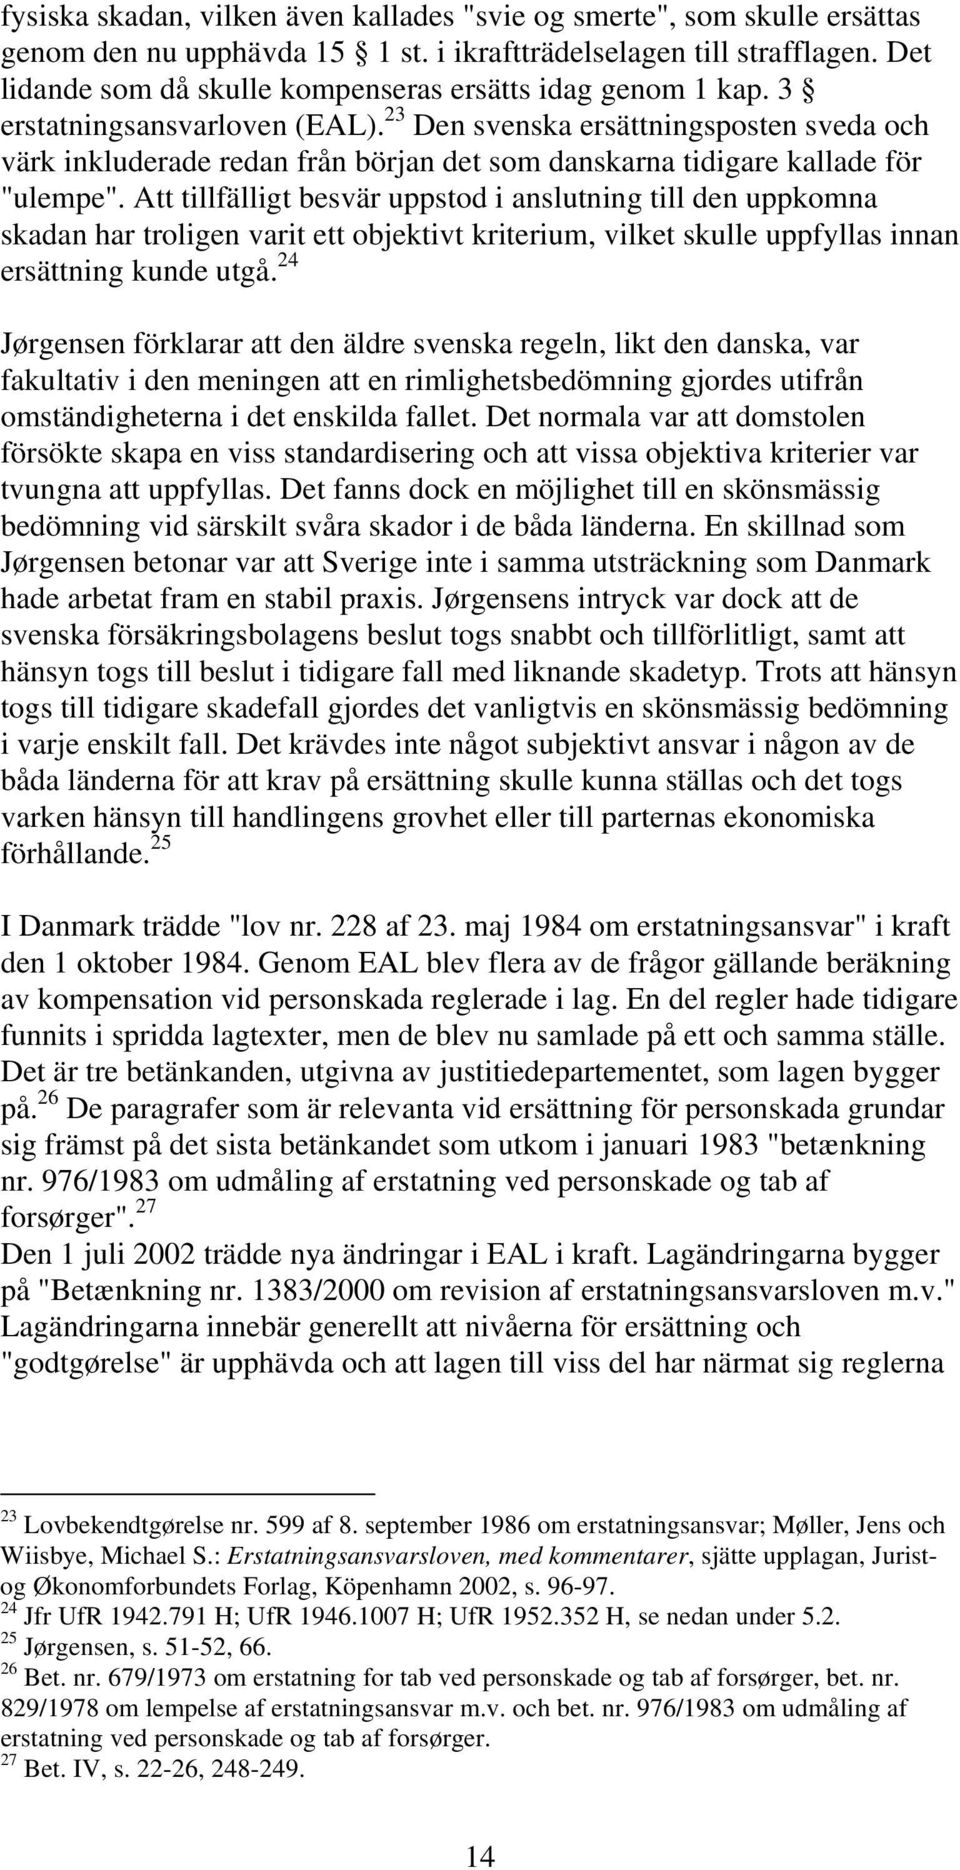 23 Den svenska ersättningsposten sveda och värk inkluderade redan från början det som danskarna tidigare kallade för "ulempe".